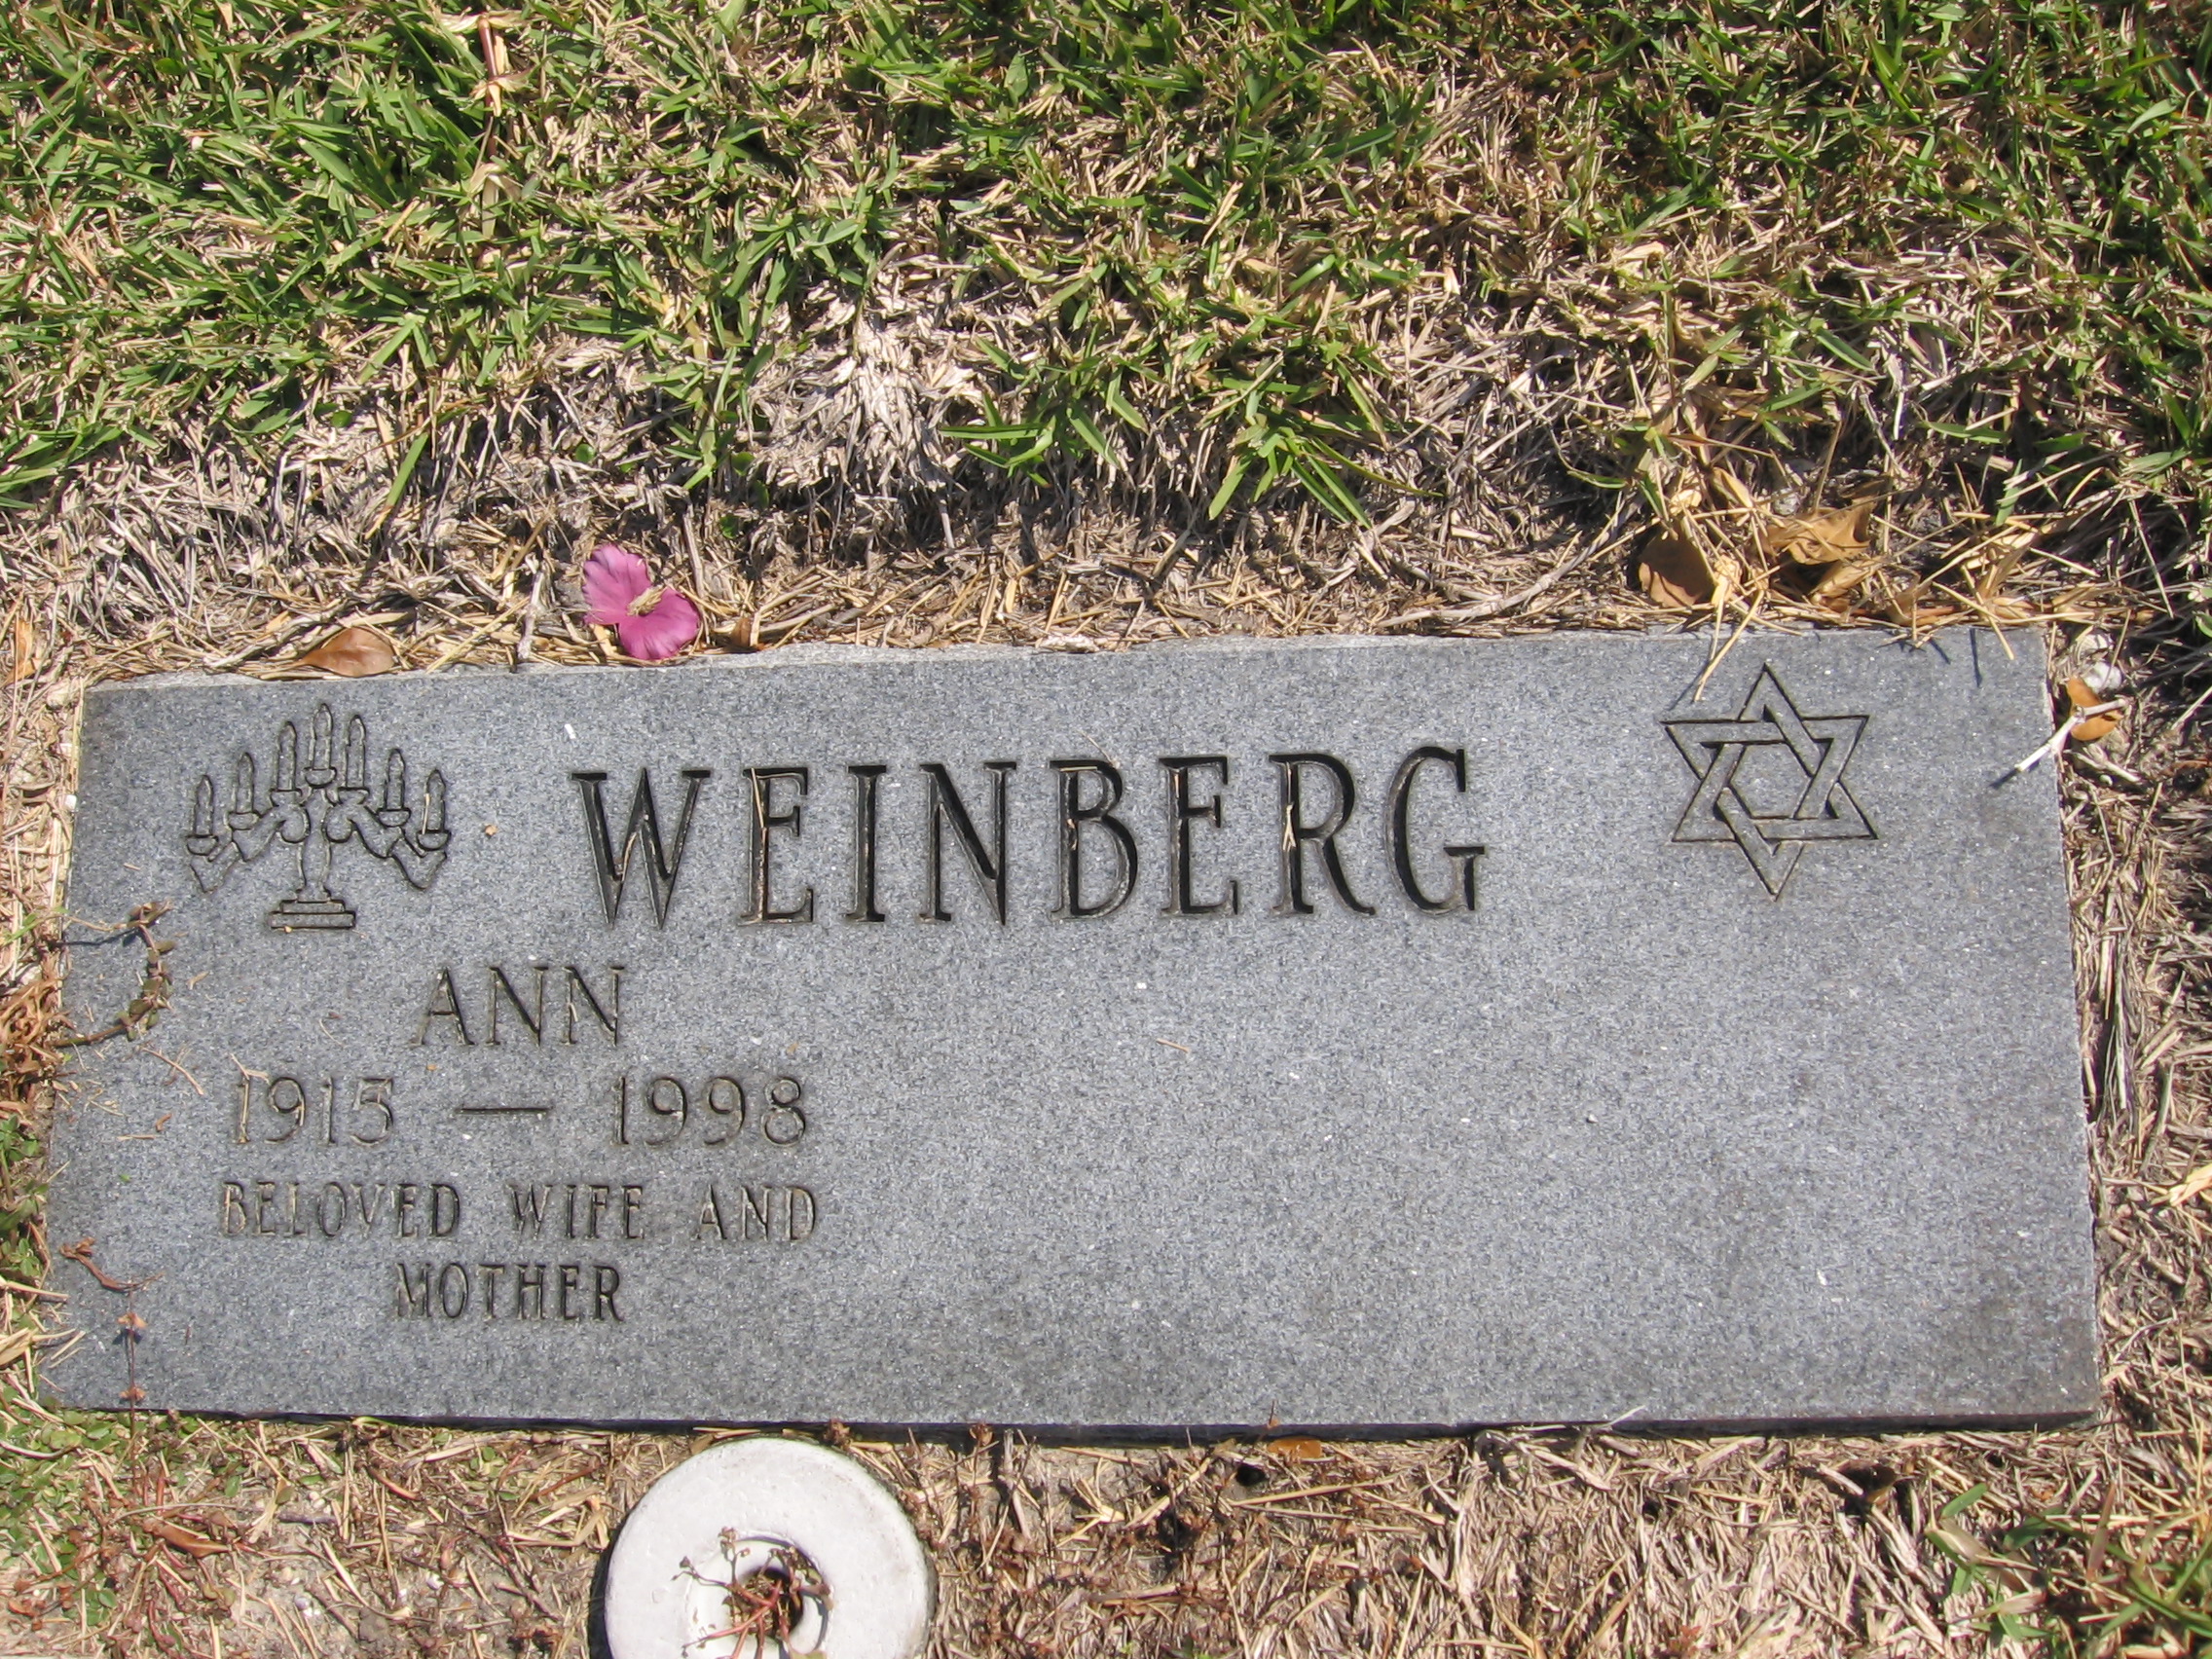 Ann Weinberg